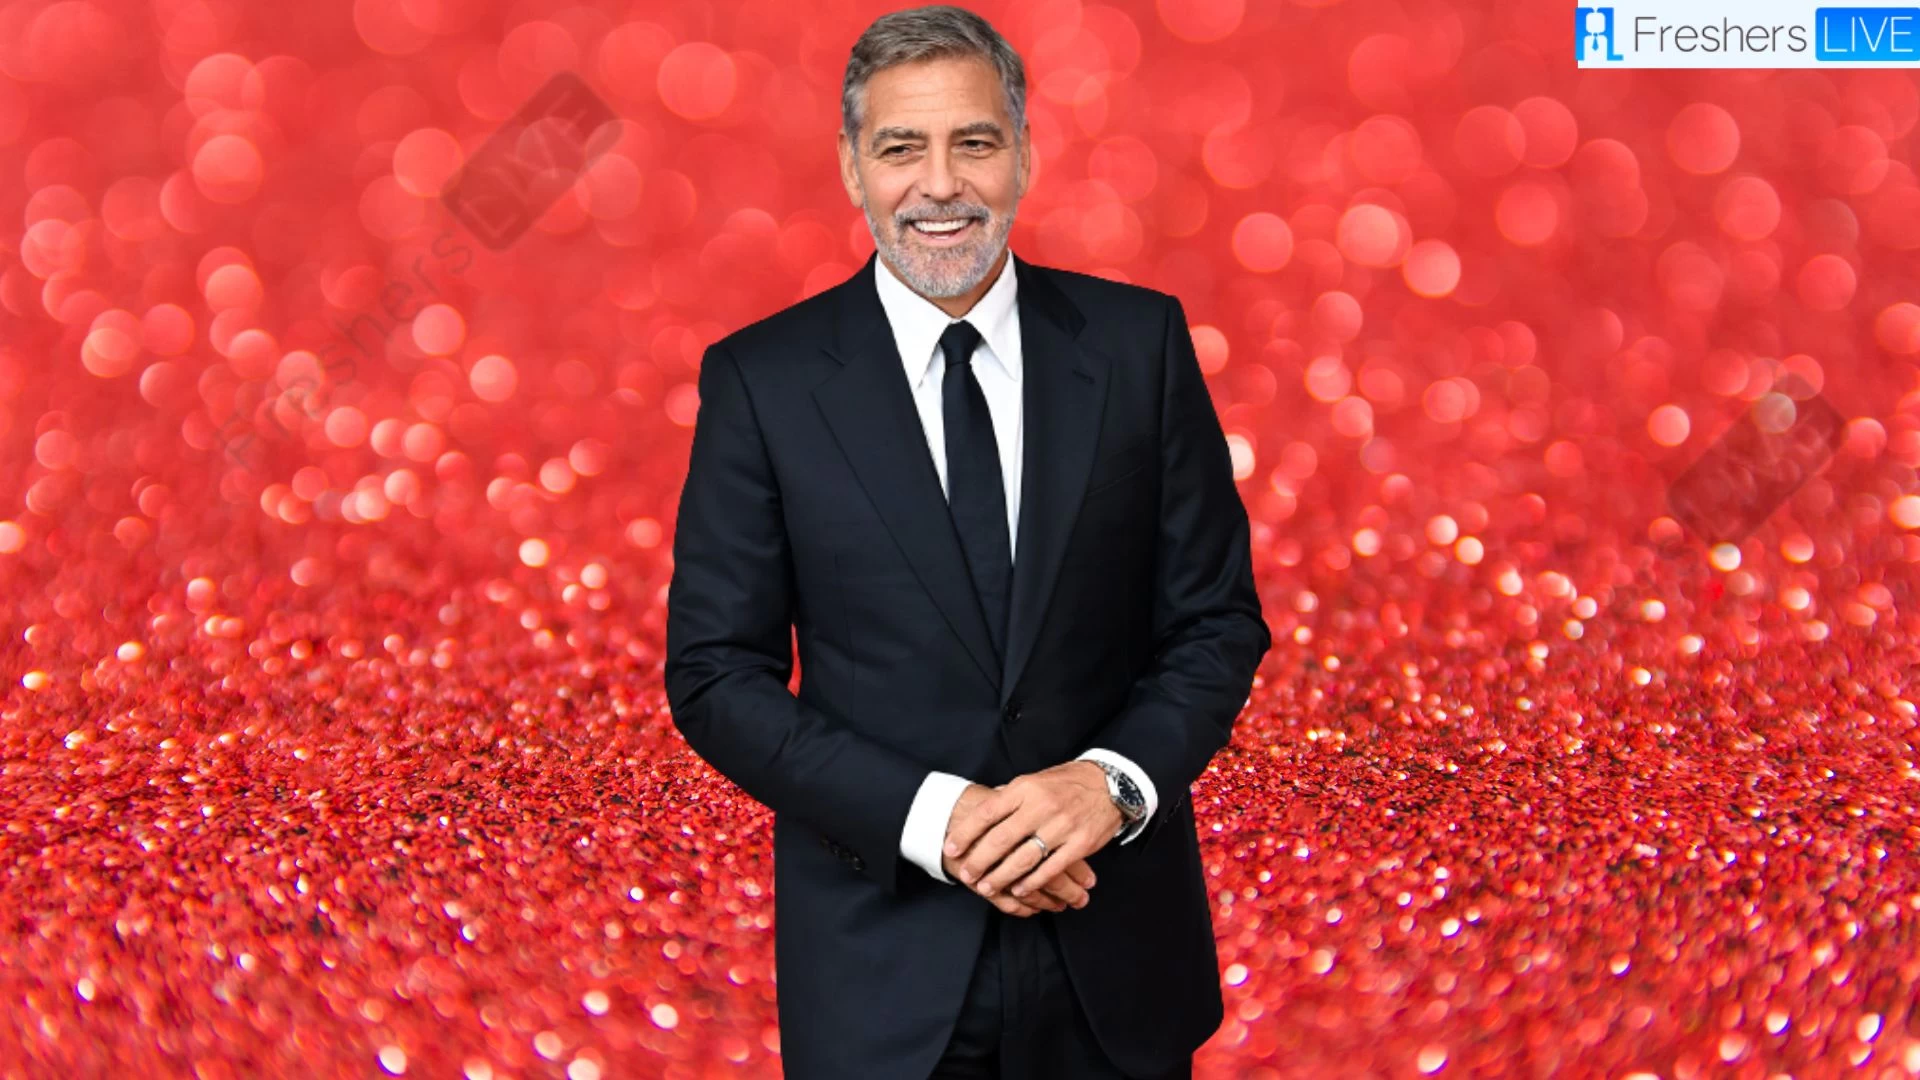 Altura de George Clooney ¿Qué altura tiene George Clooney?